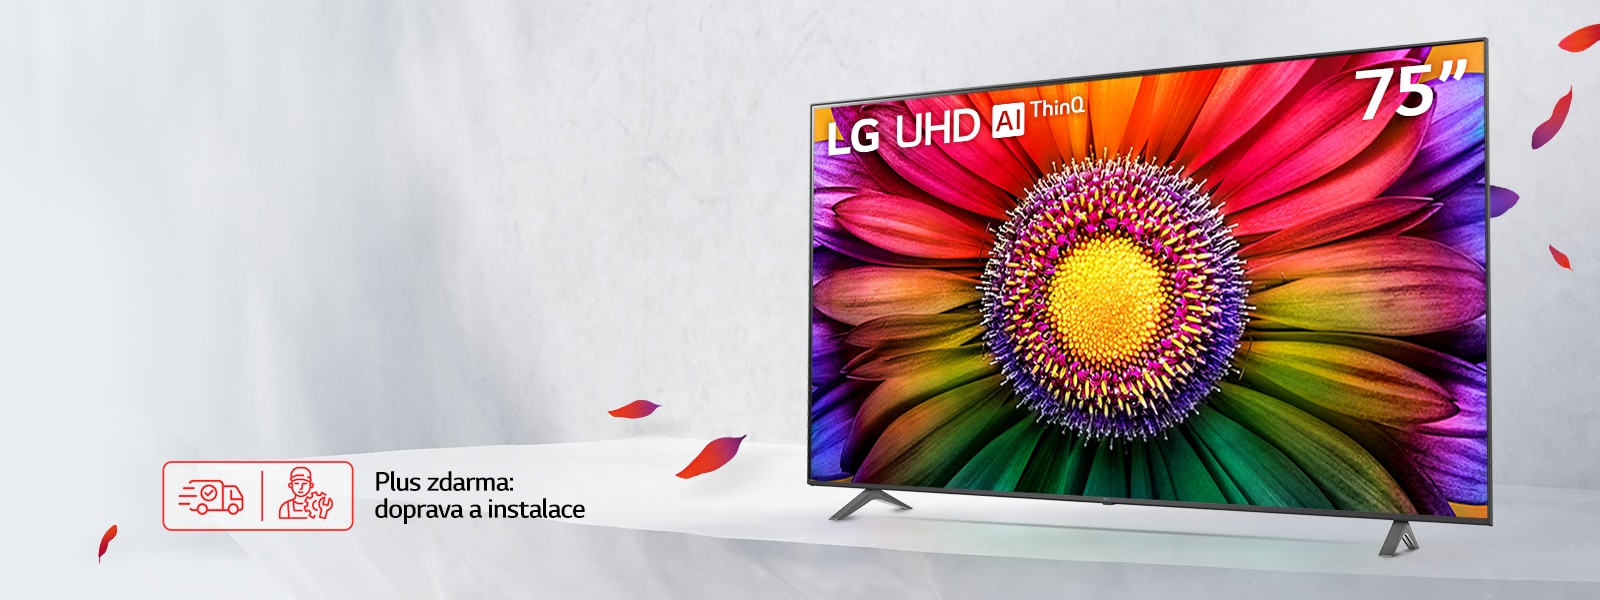 LG 4K UHD TV Velká obrazovka za nejlepší cenu